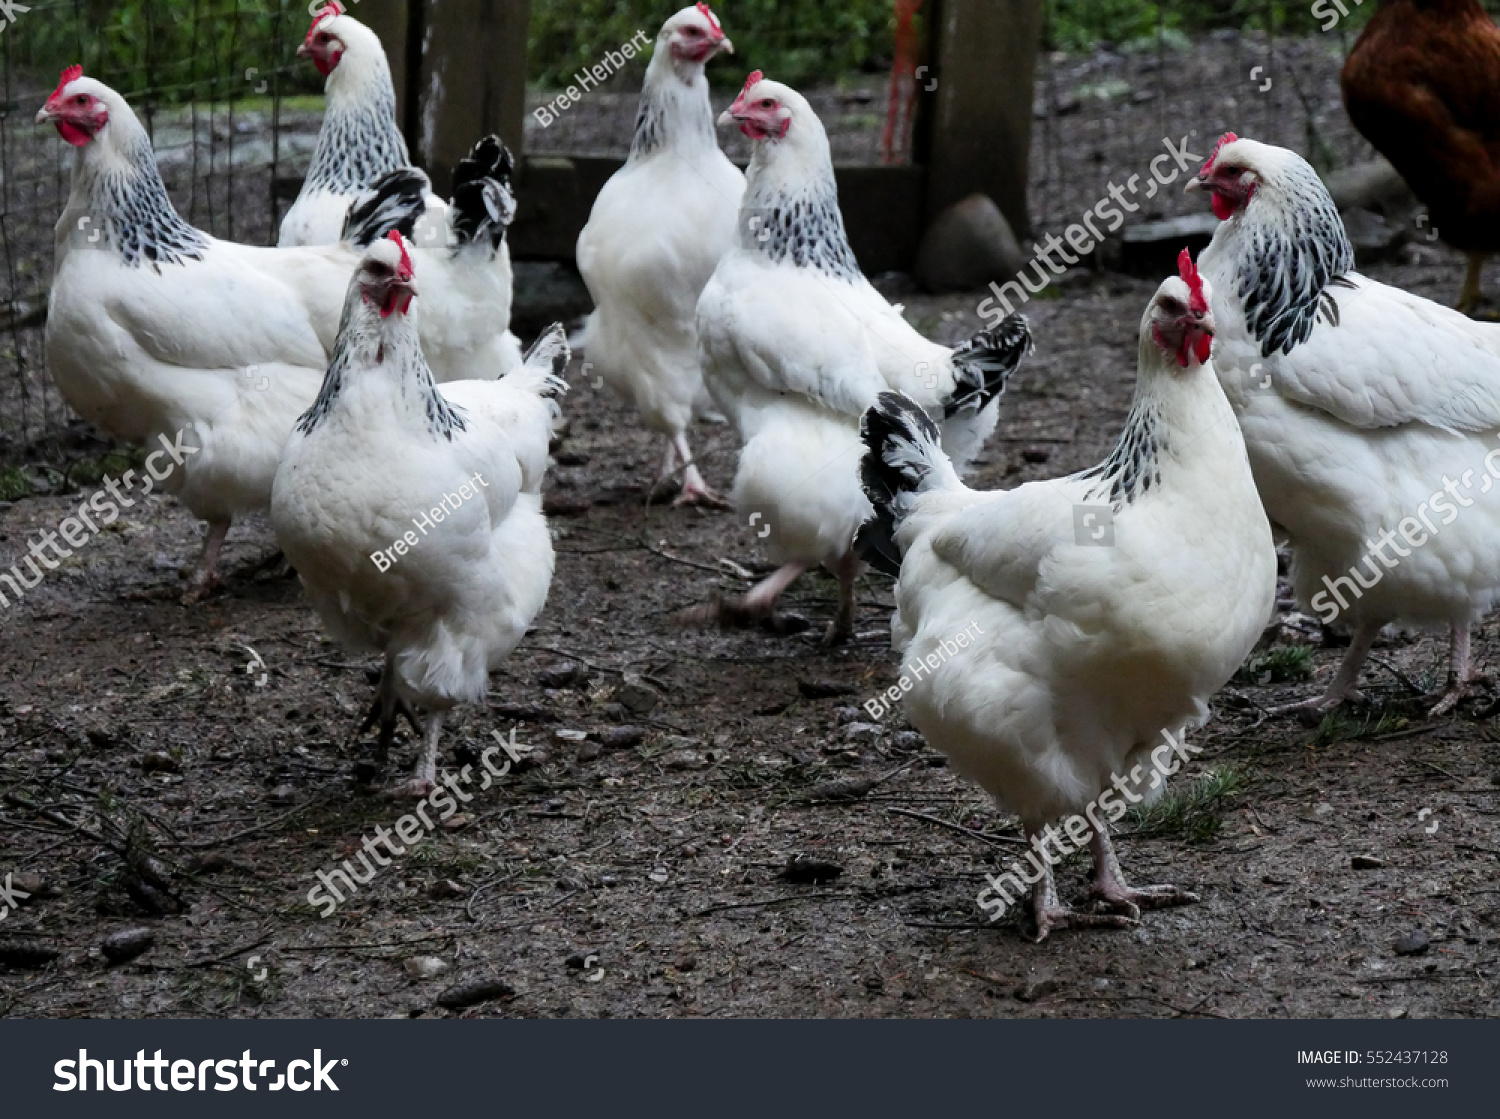 Адлерская серебристая цыплята по полу